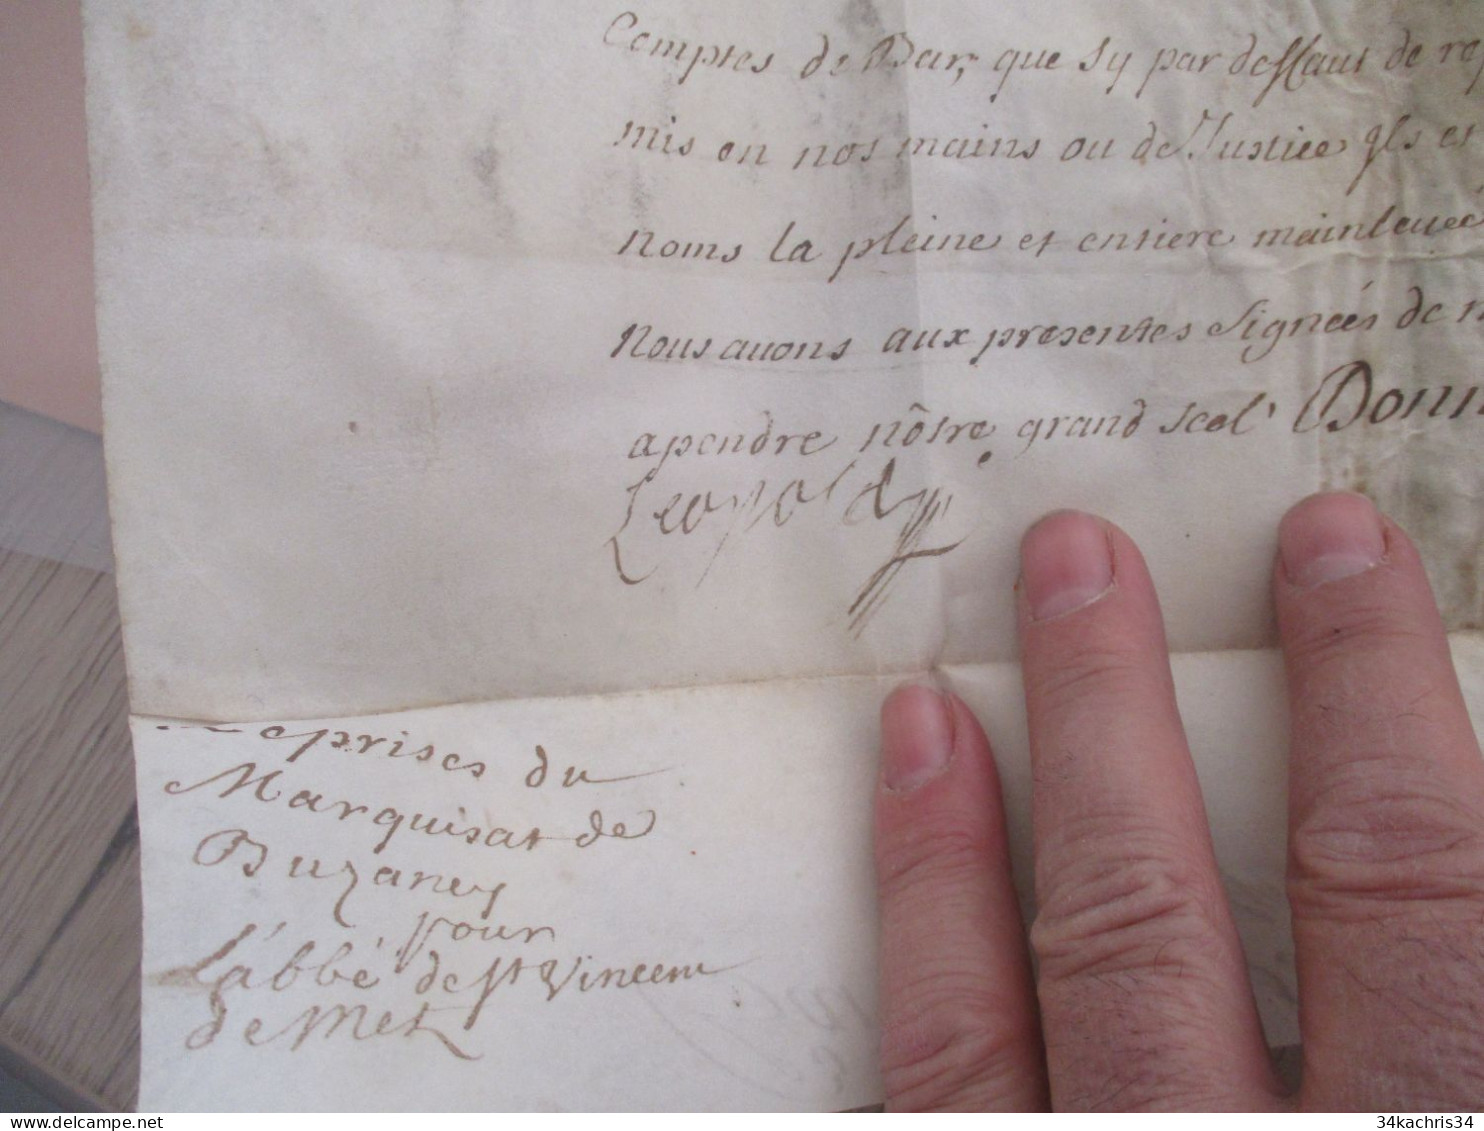 Pièce signée velin avec sceau partiel et cassé Metz Busaney Luneville 1720 fiscaux à voir Duc de Bar Patentes Bourlemont